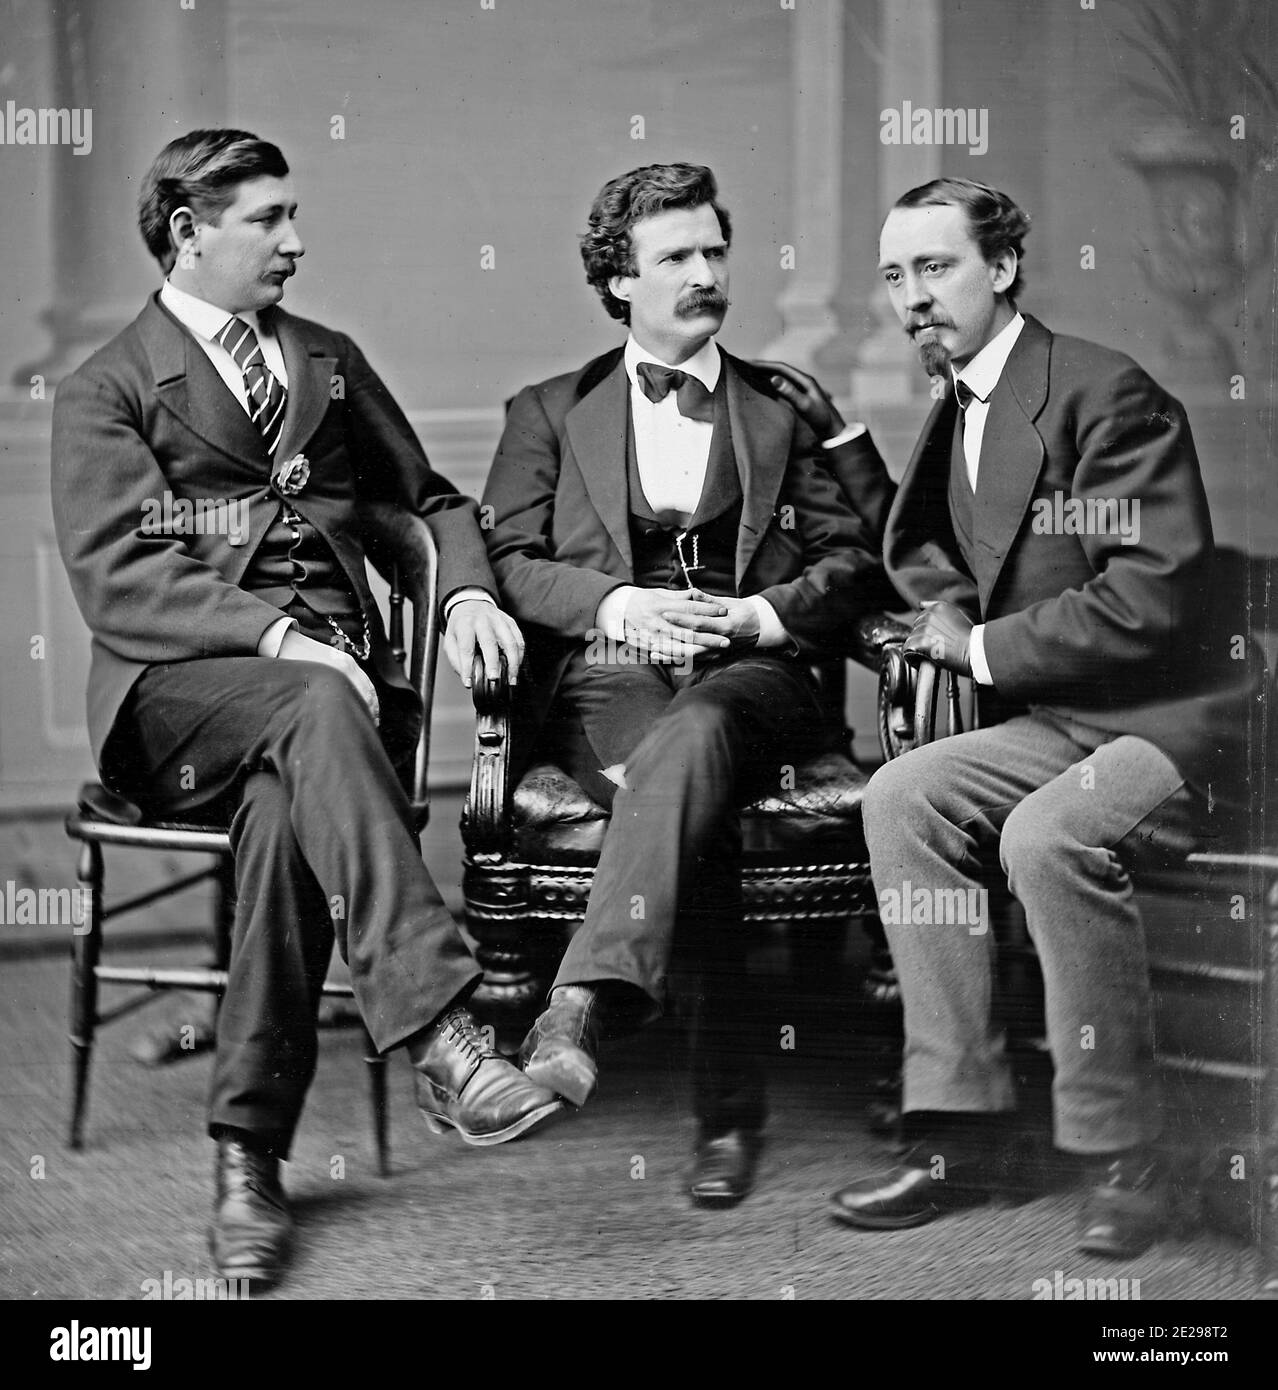 Foto de grupo retrato del autor y humorista Mark Twain (también conocido como Samuel L. Clemens; en el centro), señaló el corresponsal y autor de la Guerra Civil estadounidense George Alfred Townsend (izquierda), y David Gray, editor del Buffalo Courier (derecha), febrero de 1871 Foto de stock